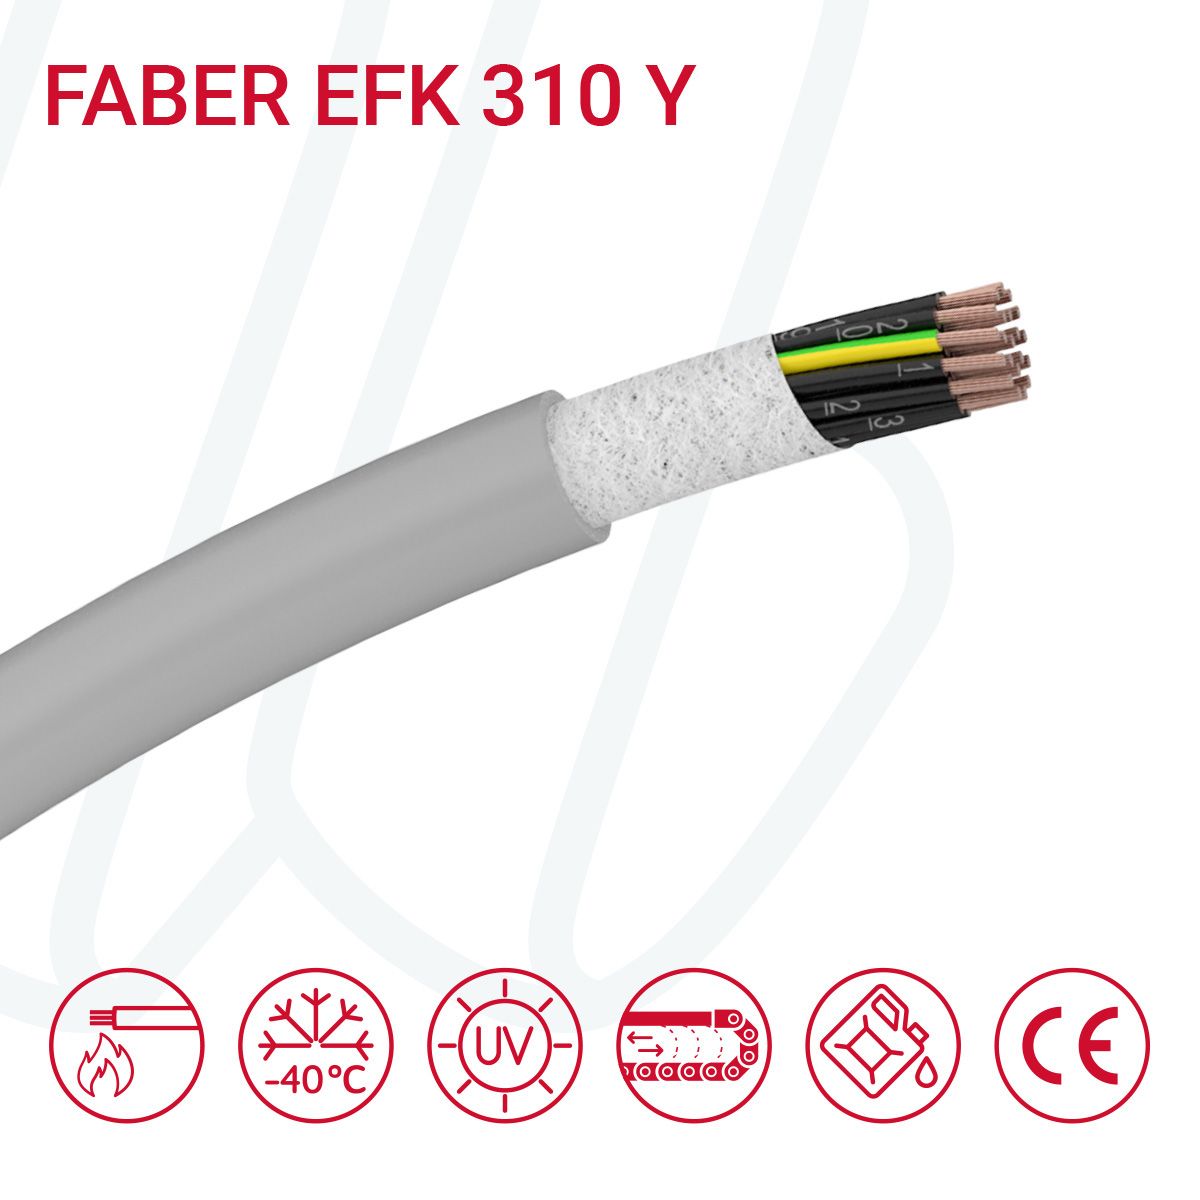 Кабель FABER EFK 310 Y 10G1 cUL сірий, 10, 1.0